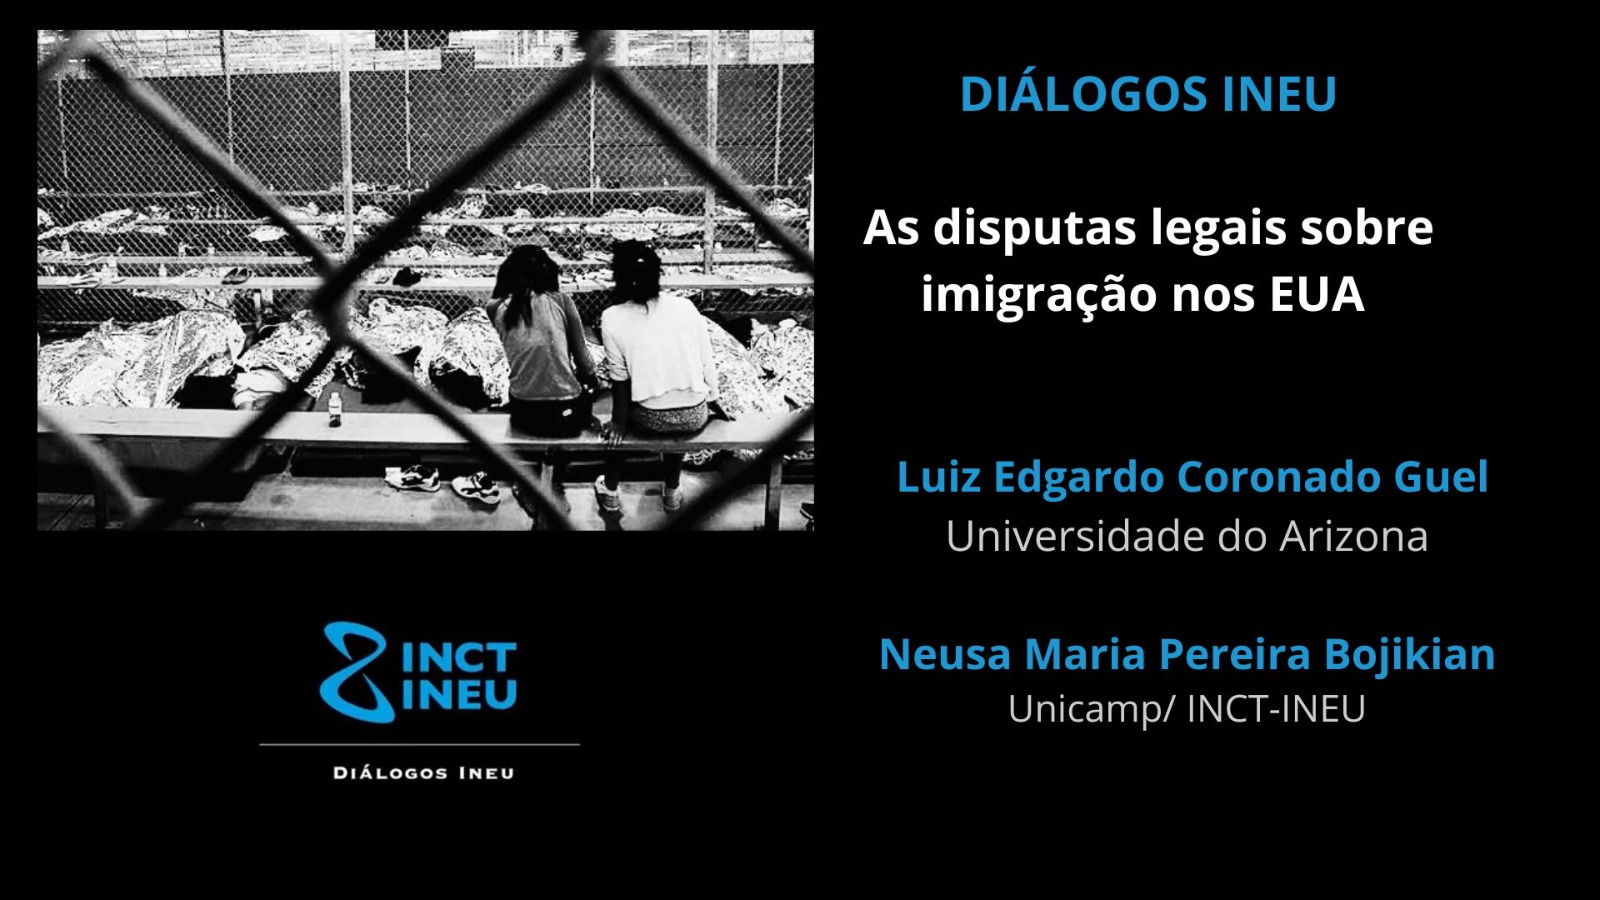 Diálogos INEU: as disputas legais sobre a imigração nos EUA